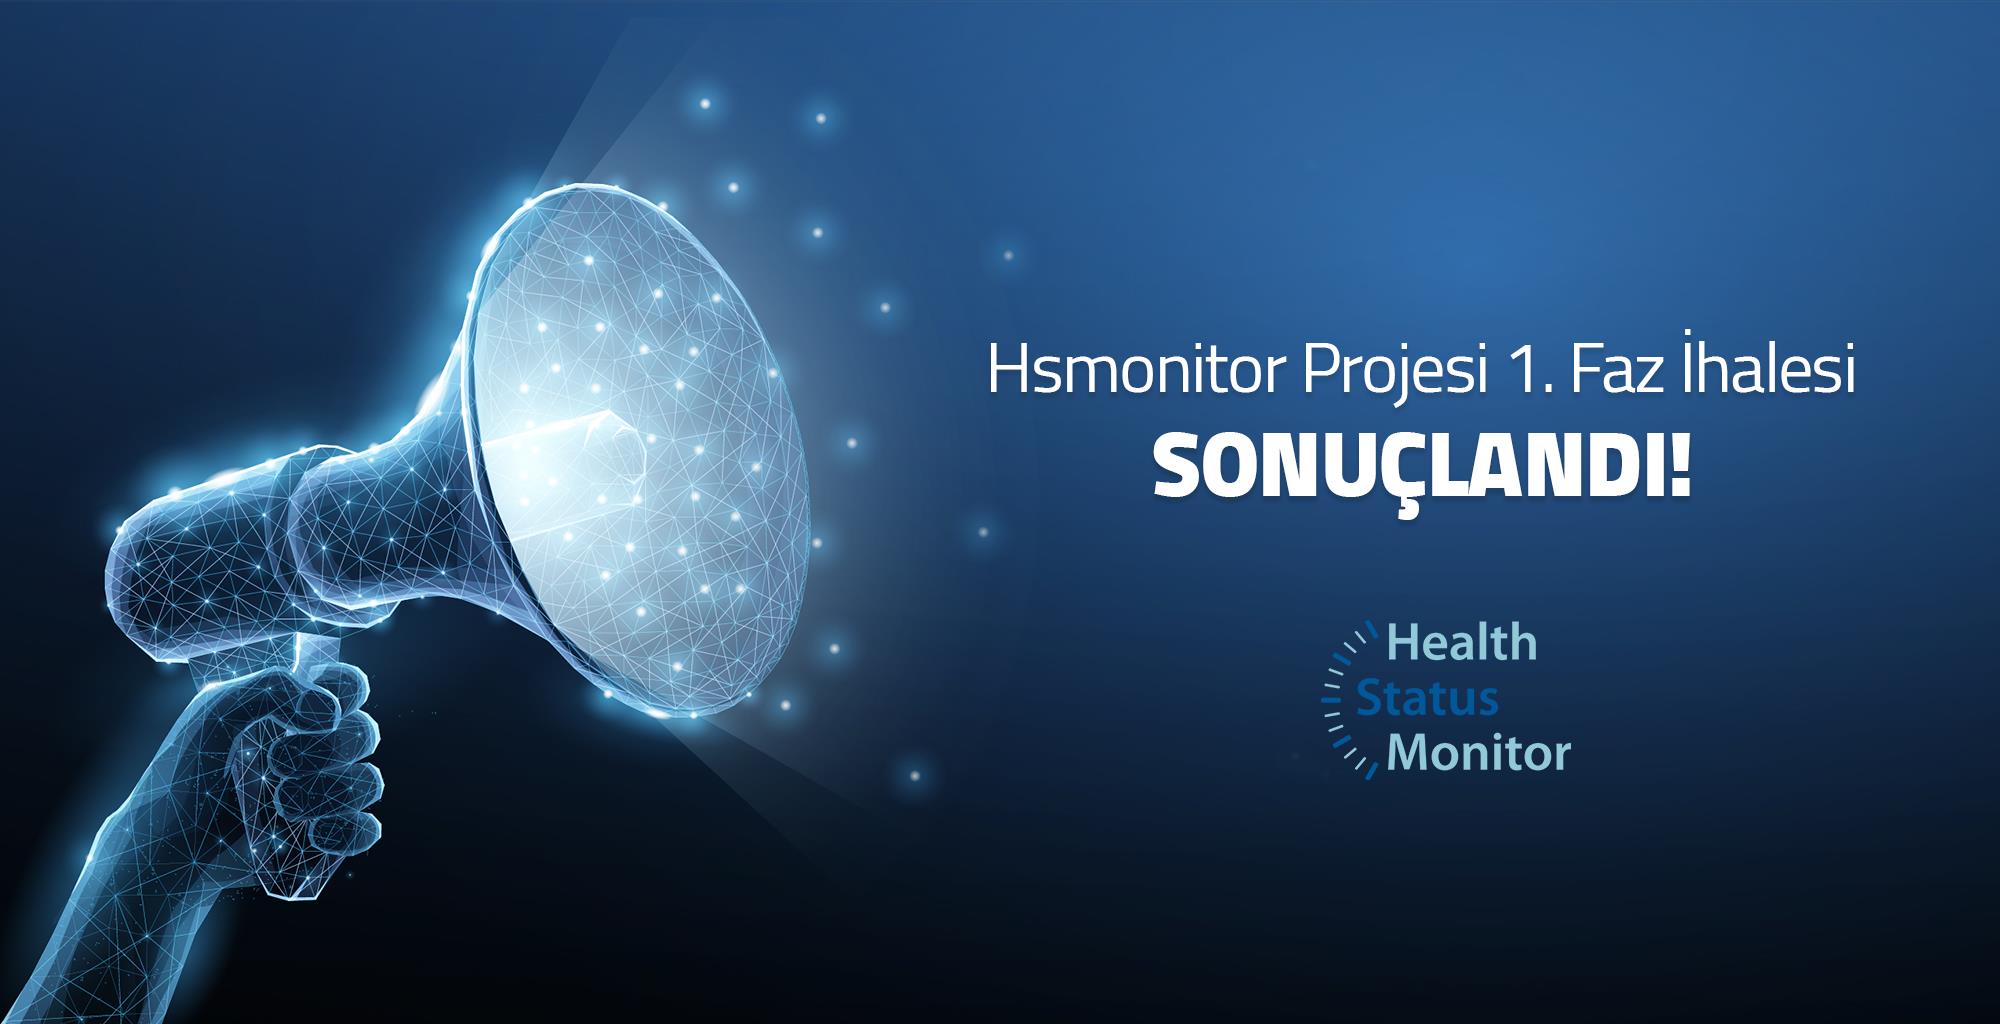 HSMonitor Proje İhalesi Sonucu